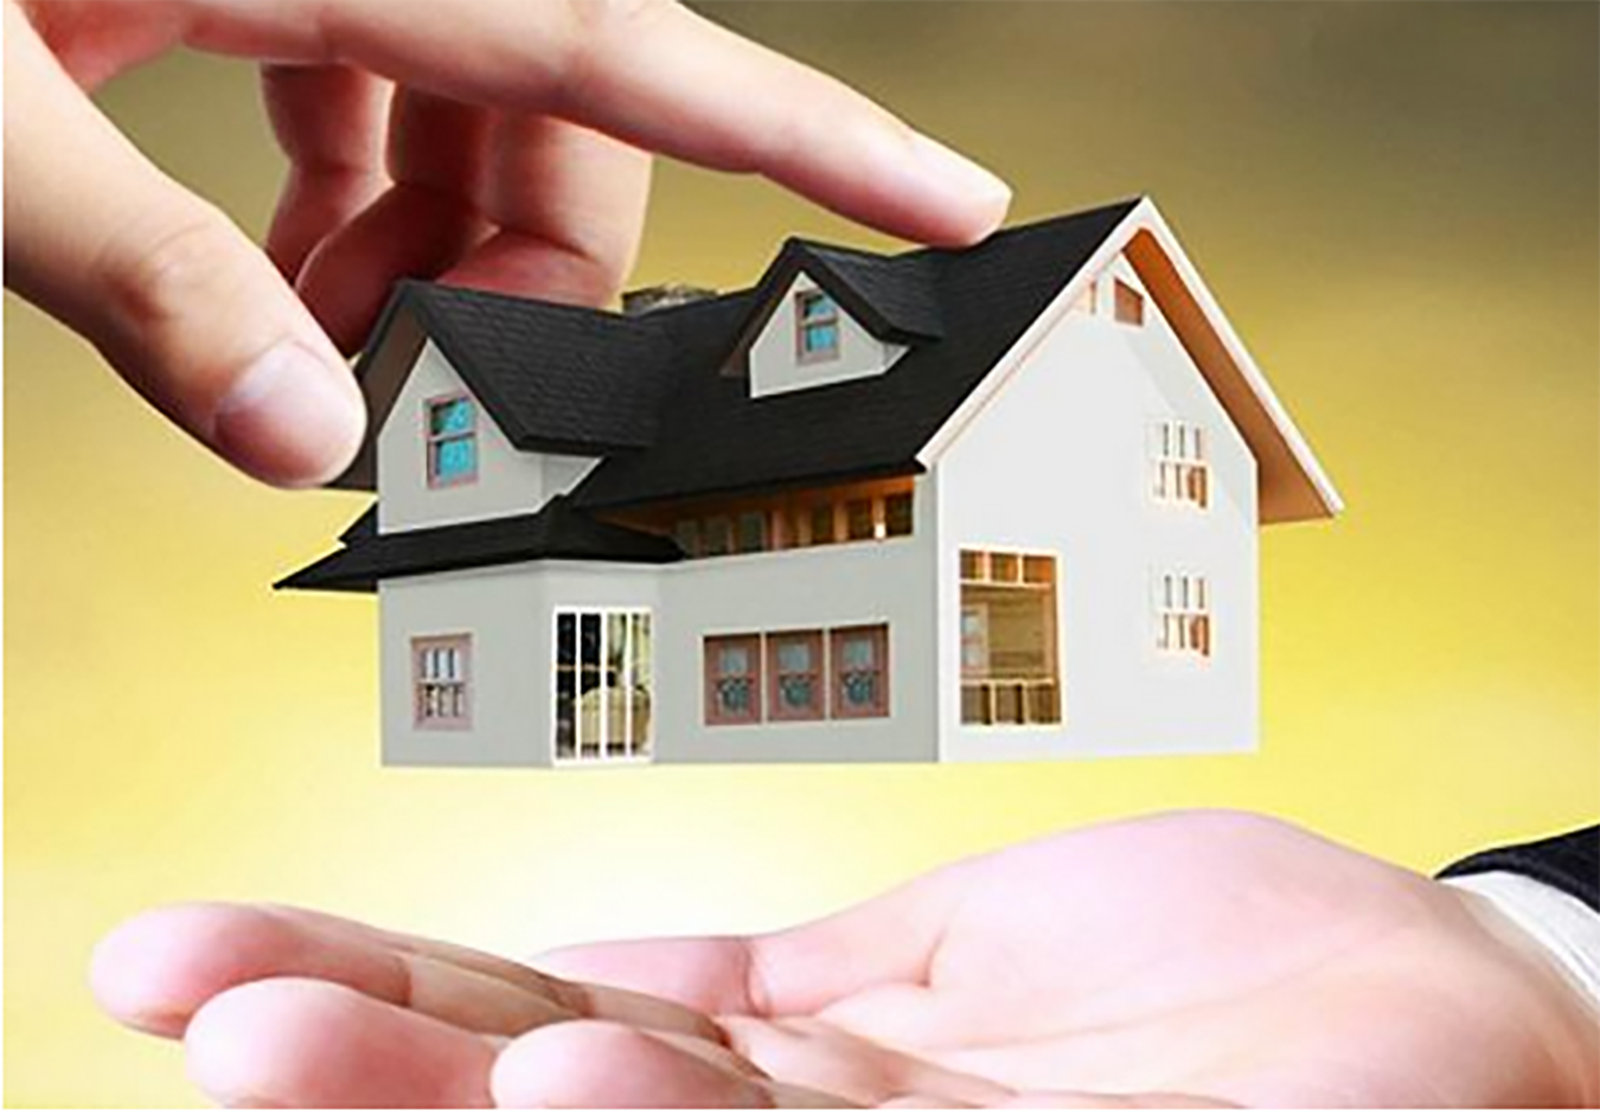 Pháp luật về mua bán nhà ở hình thành trong tương lai thế nào?